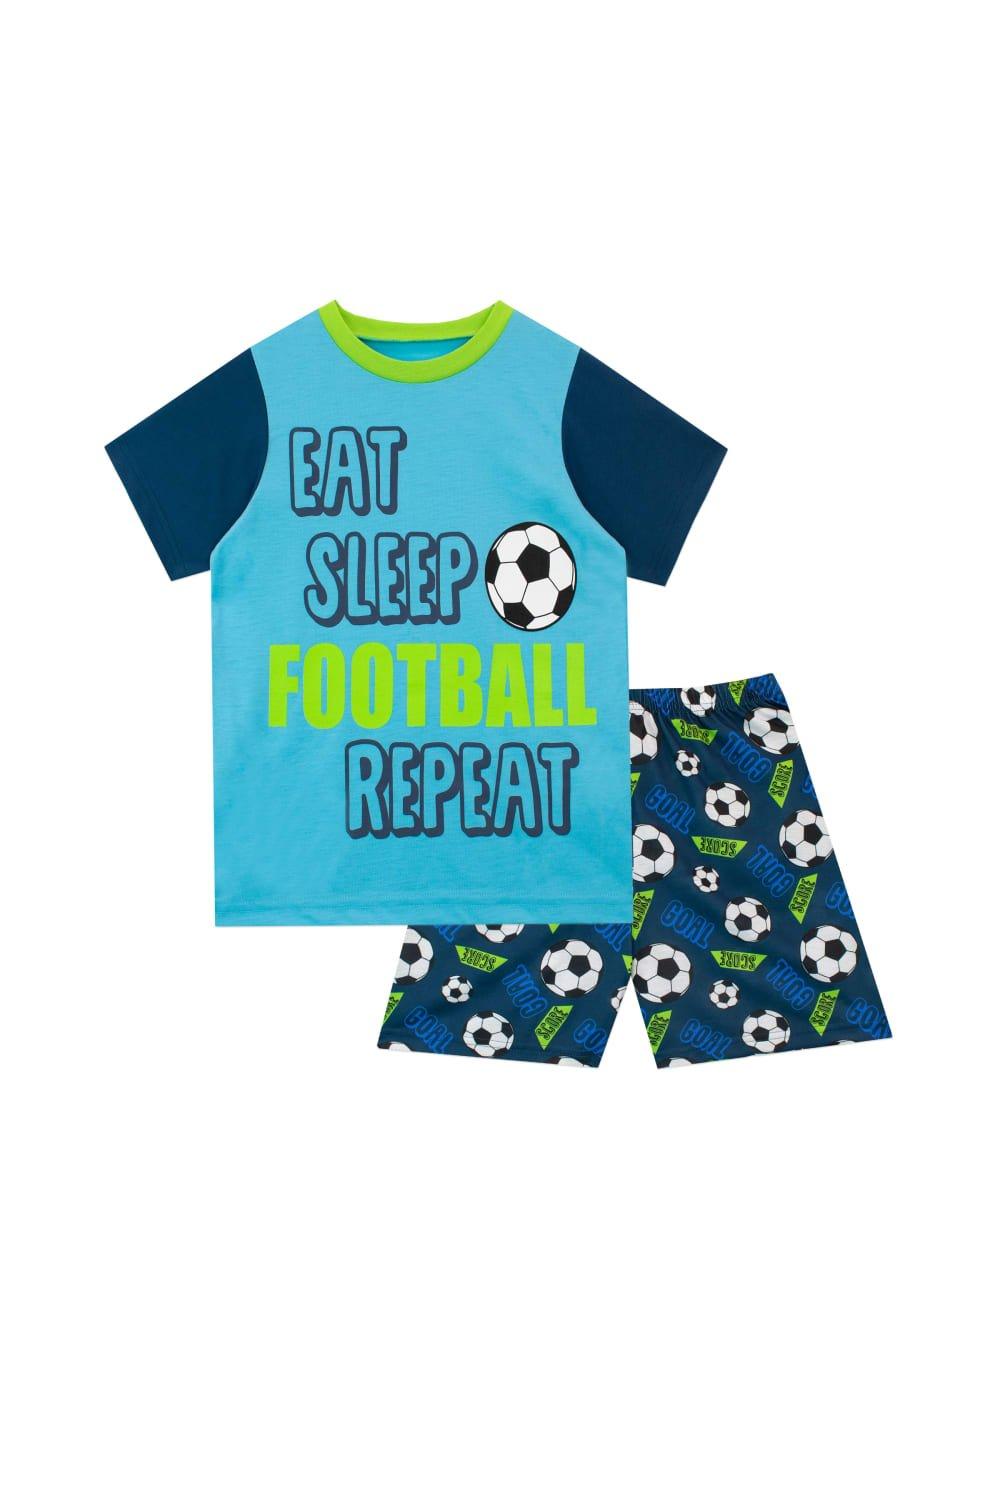 Eat Sleep Football Pyjamas